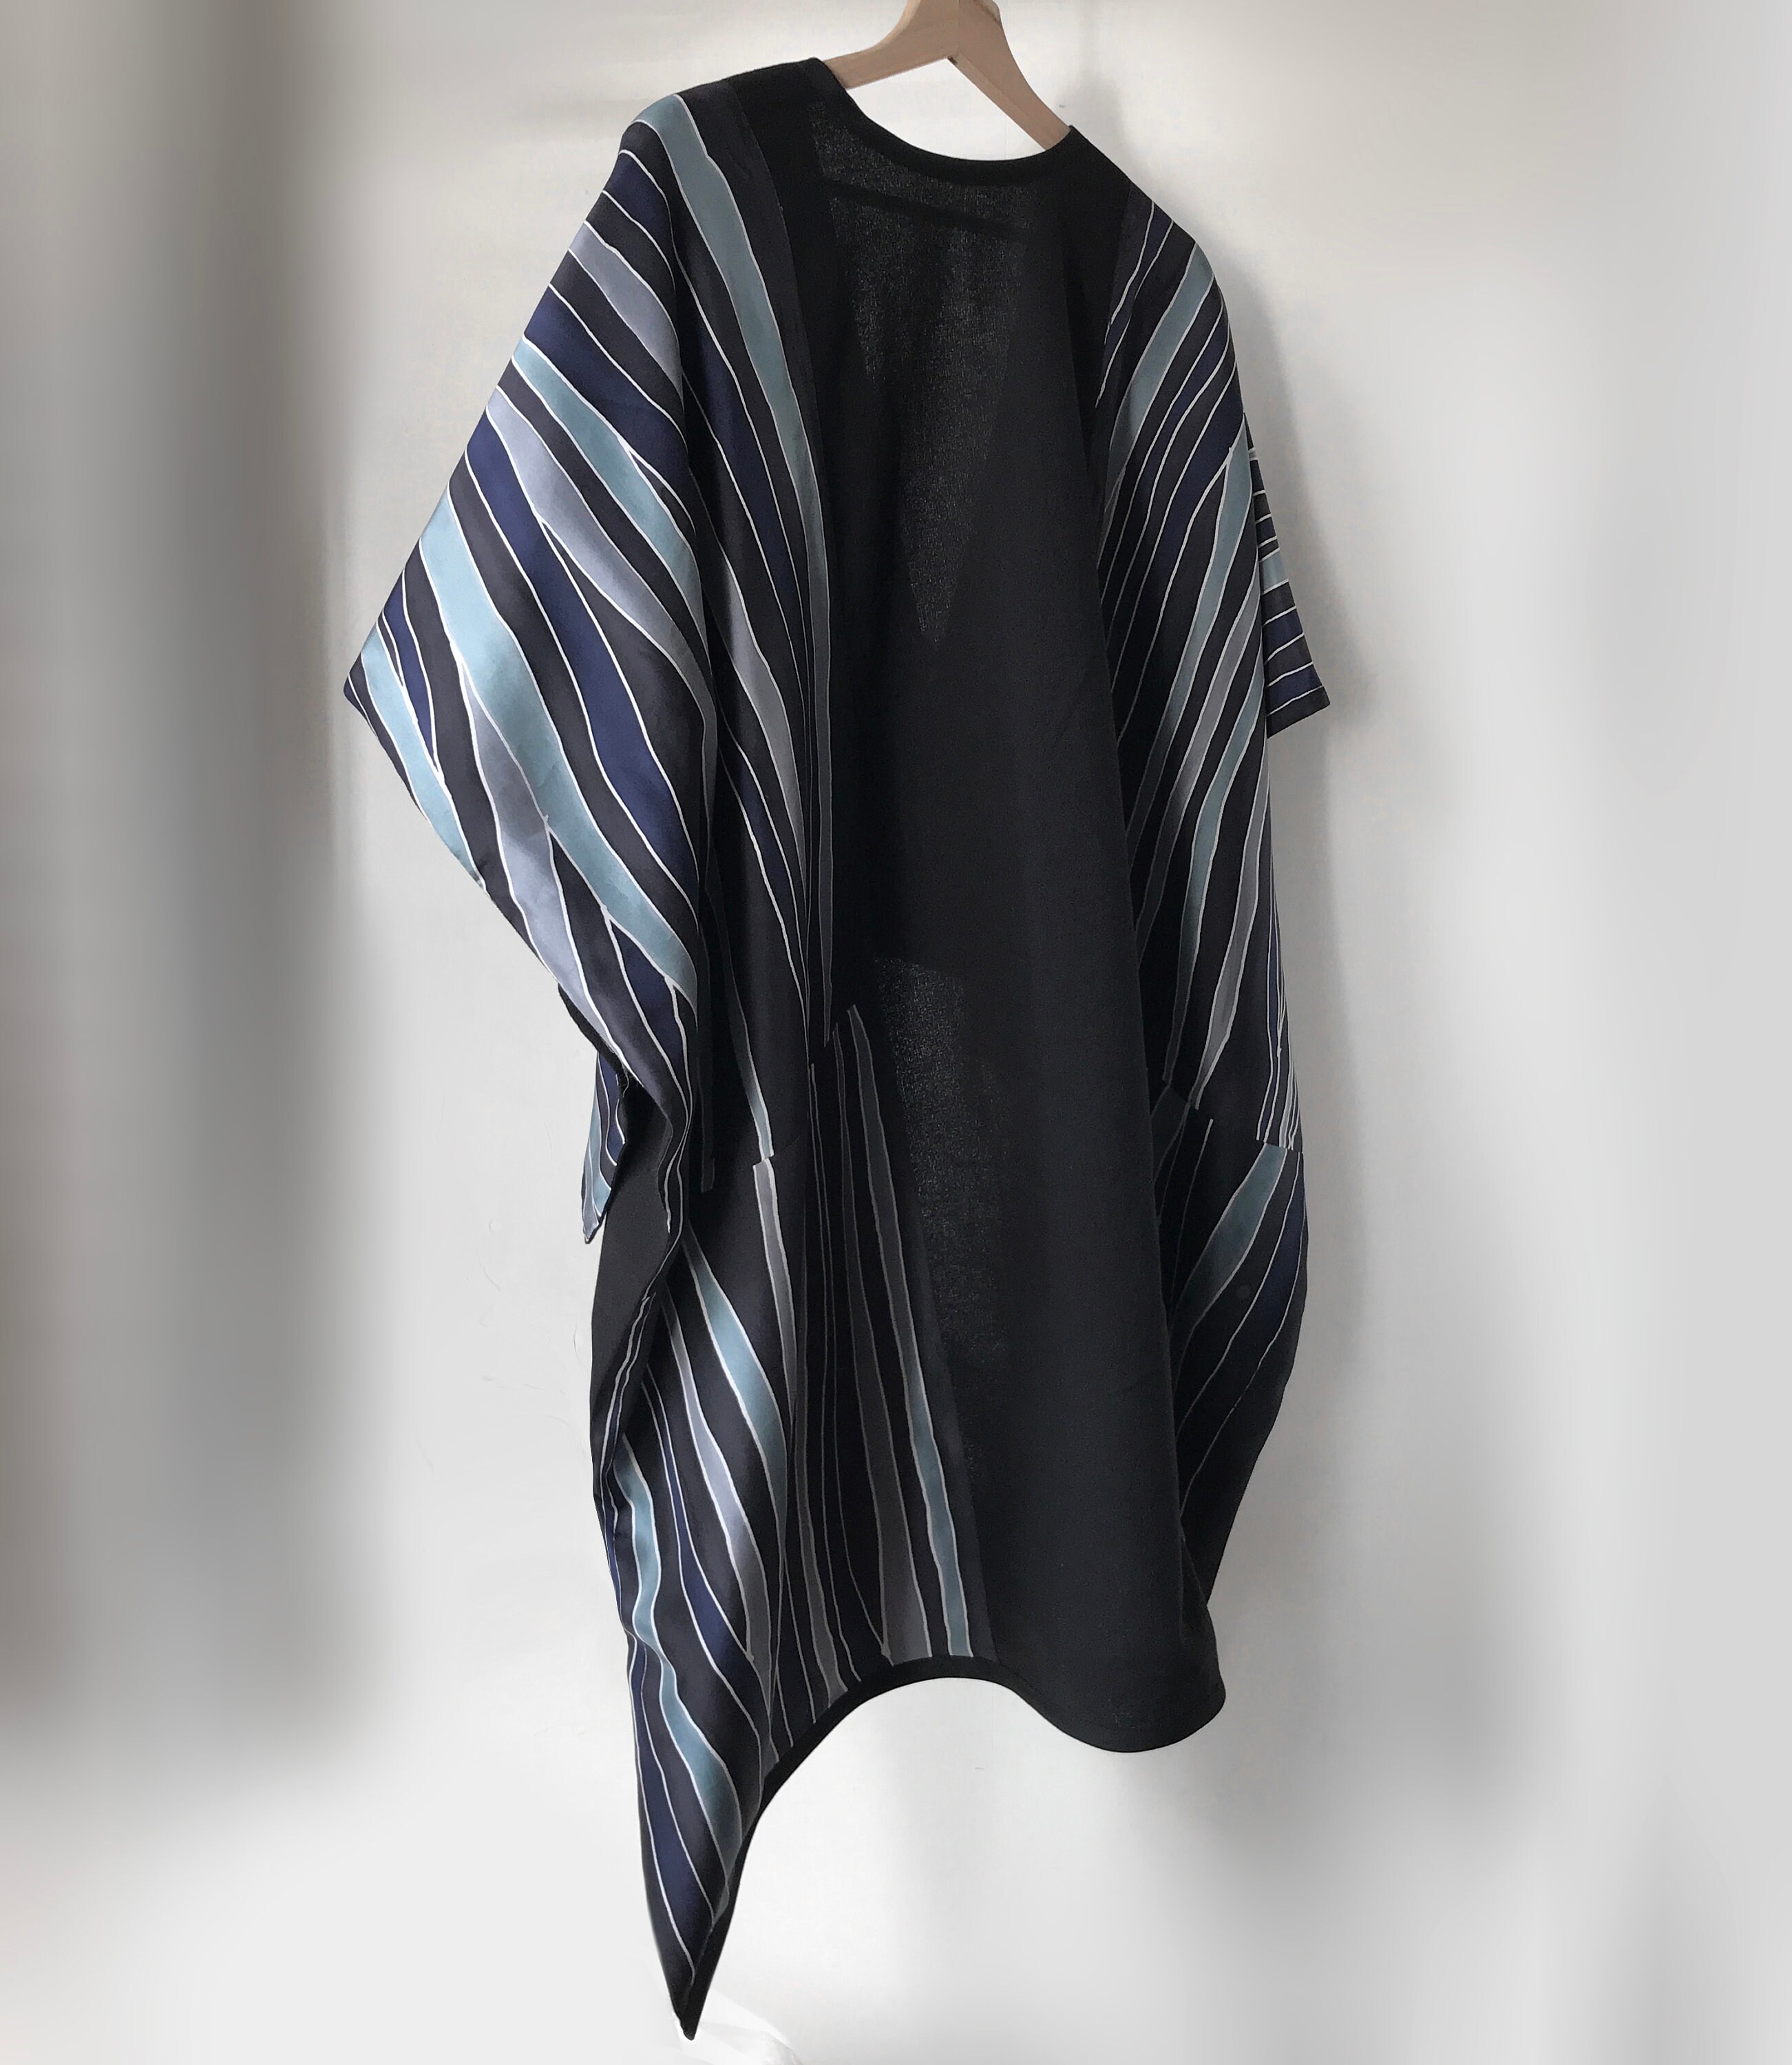 Silk Kimono Robe / Linen Jacket / Long Robe / Cape Coat / | Etsy